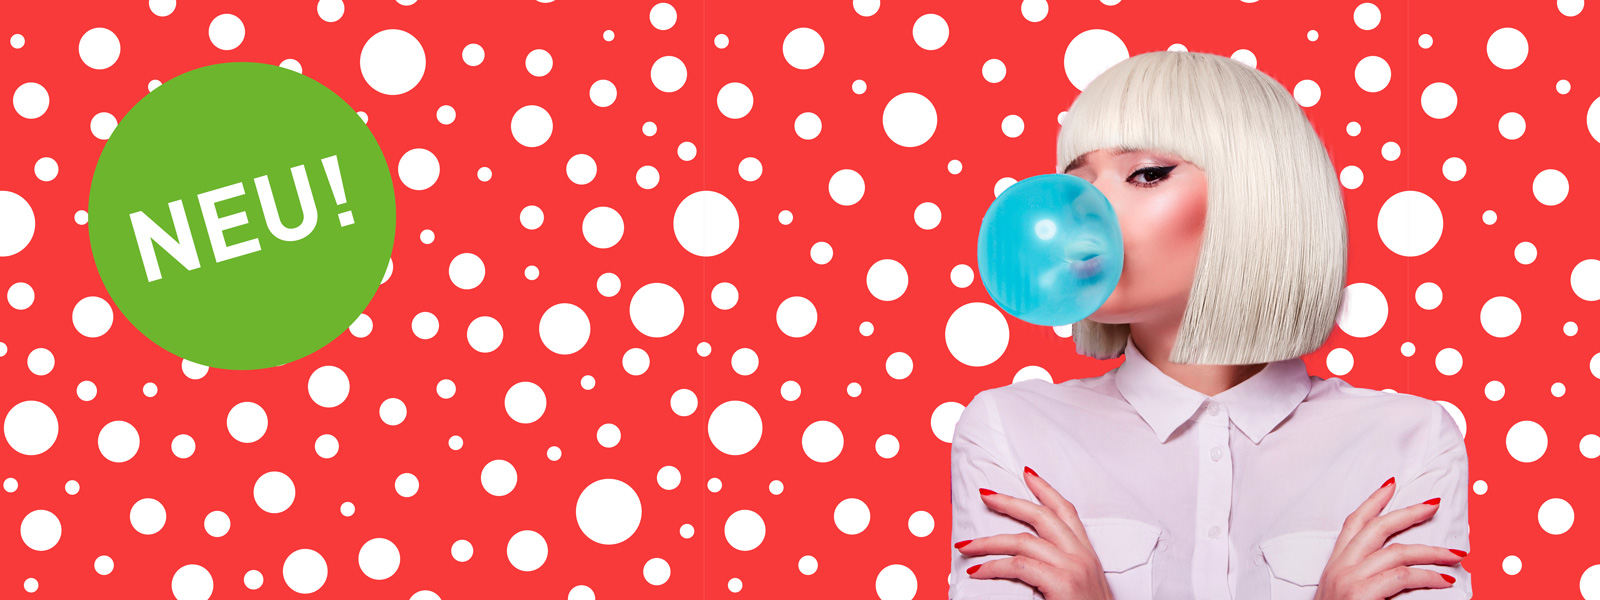 blasenfreie verklebung - frau mit blonden Haaren und blauer Kaugummiblase auf rosa gestreiftem Hintergrund